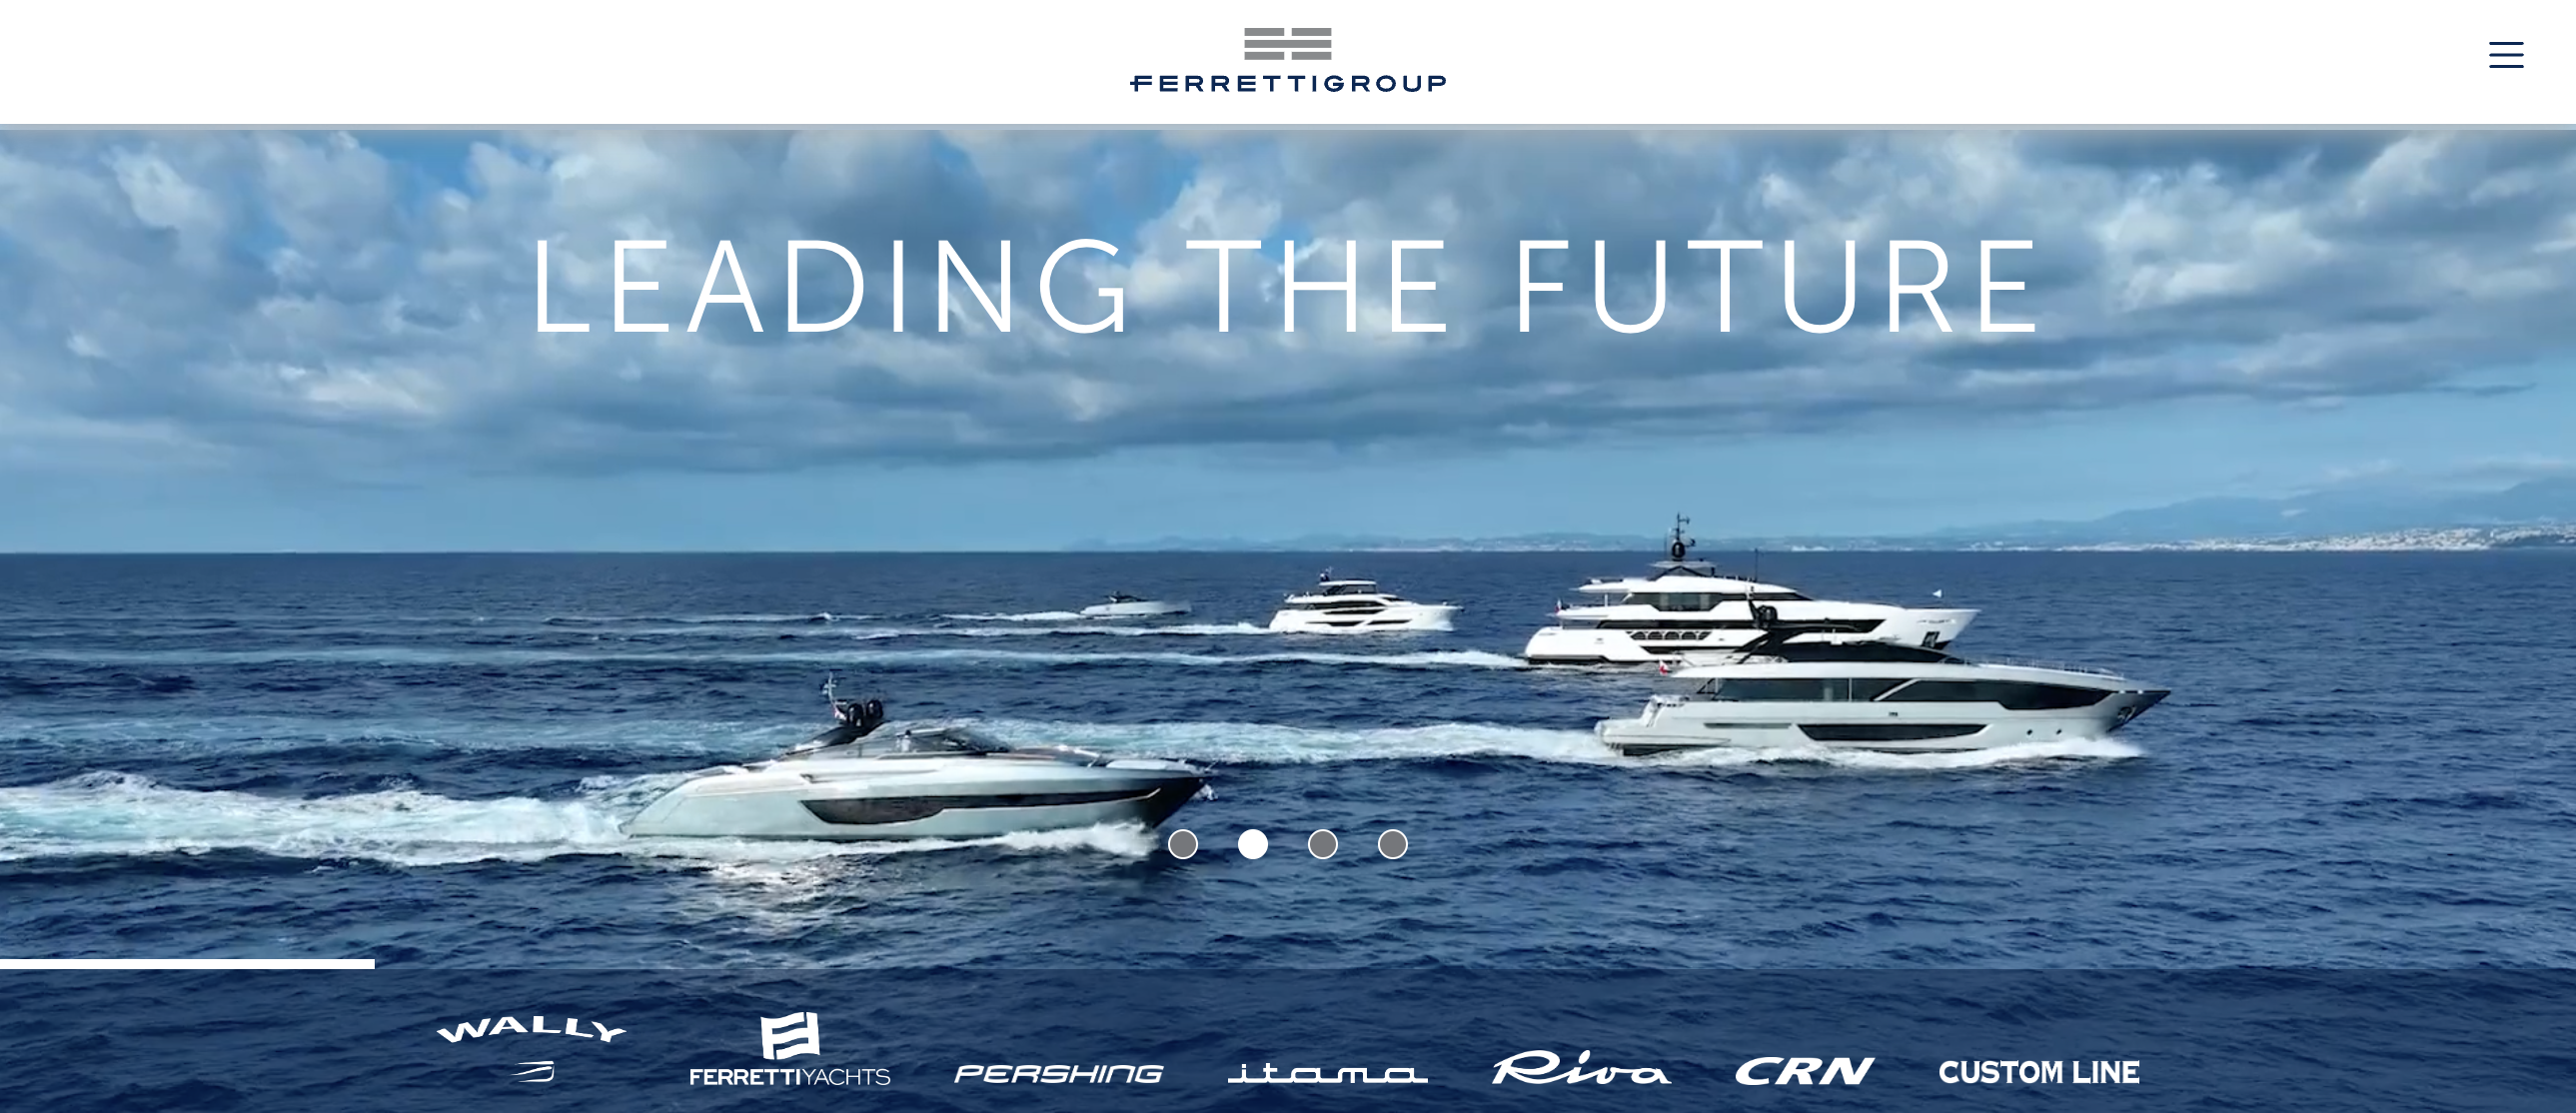 意大利豪华游艇制造巨头 Ferretti 集团一季度净营收同比增长11.7%，在手订单超过16亿欧元